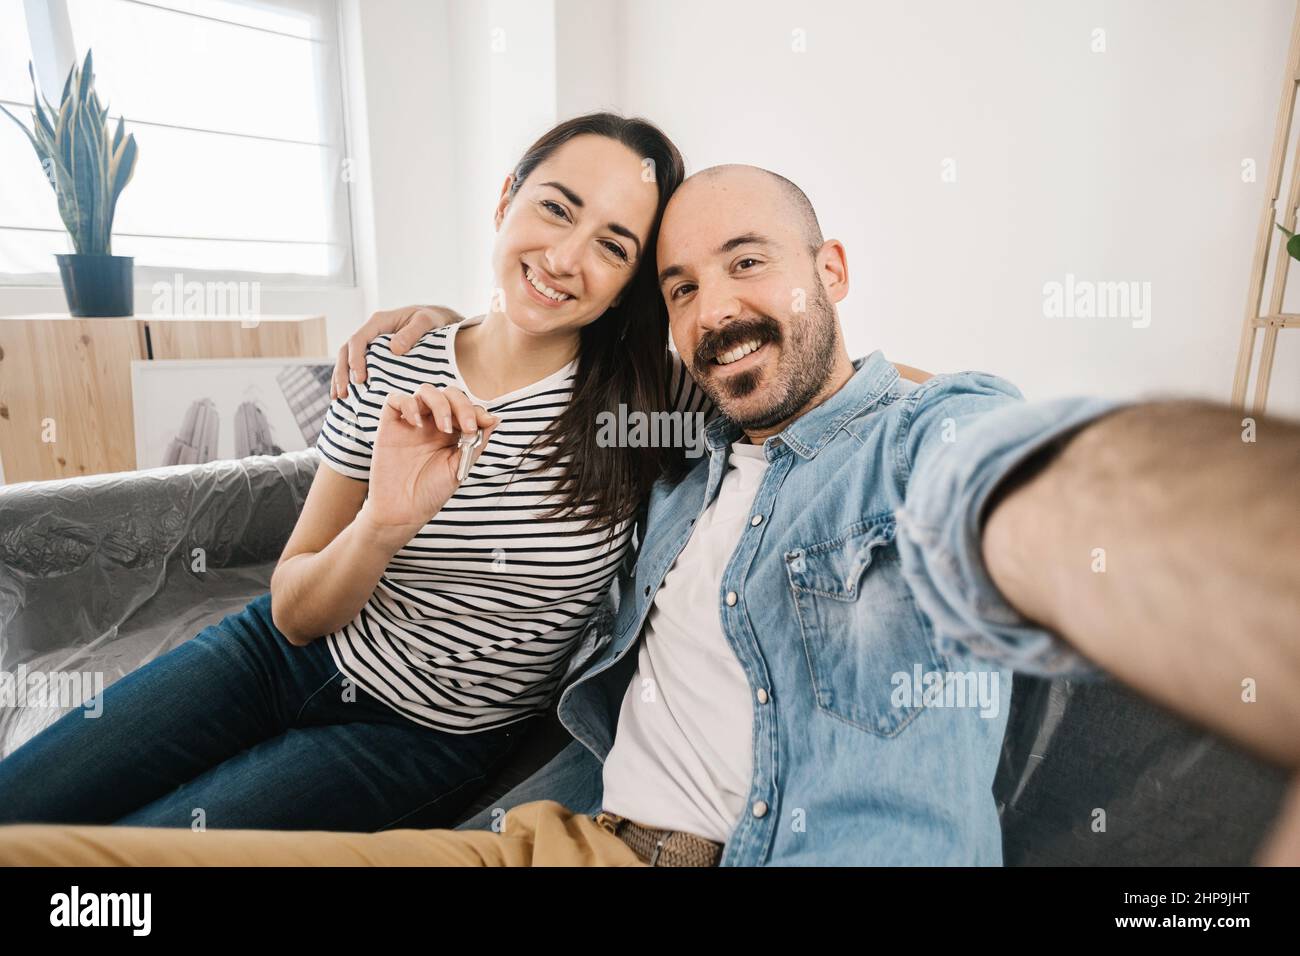 Glückliches junges erwachsenes Paar, das Selfie-Foto macht, nachdem es in eine neue Wohnung umzog Stockfoto